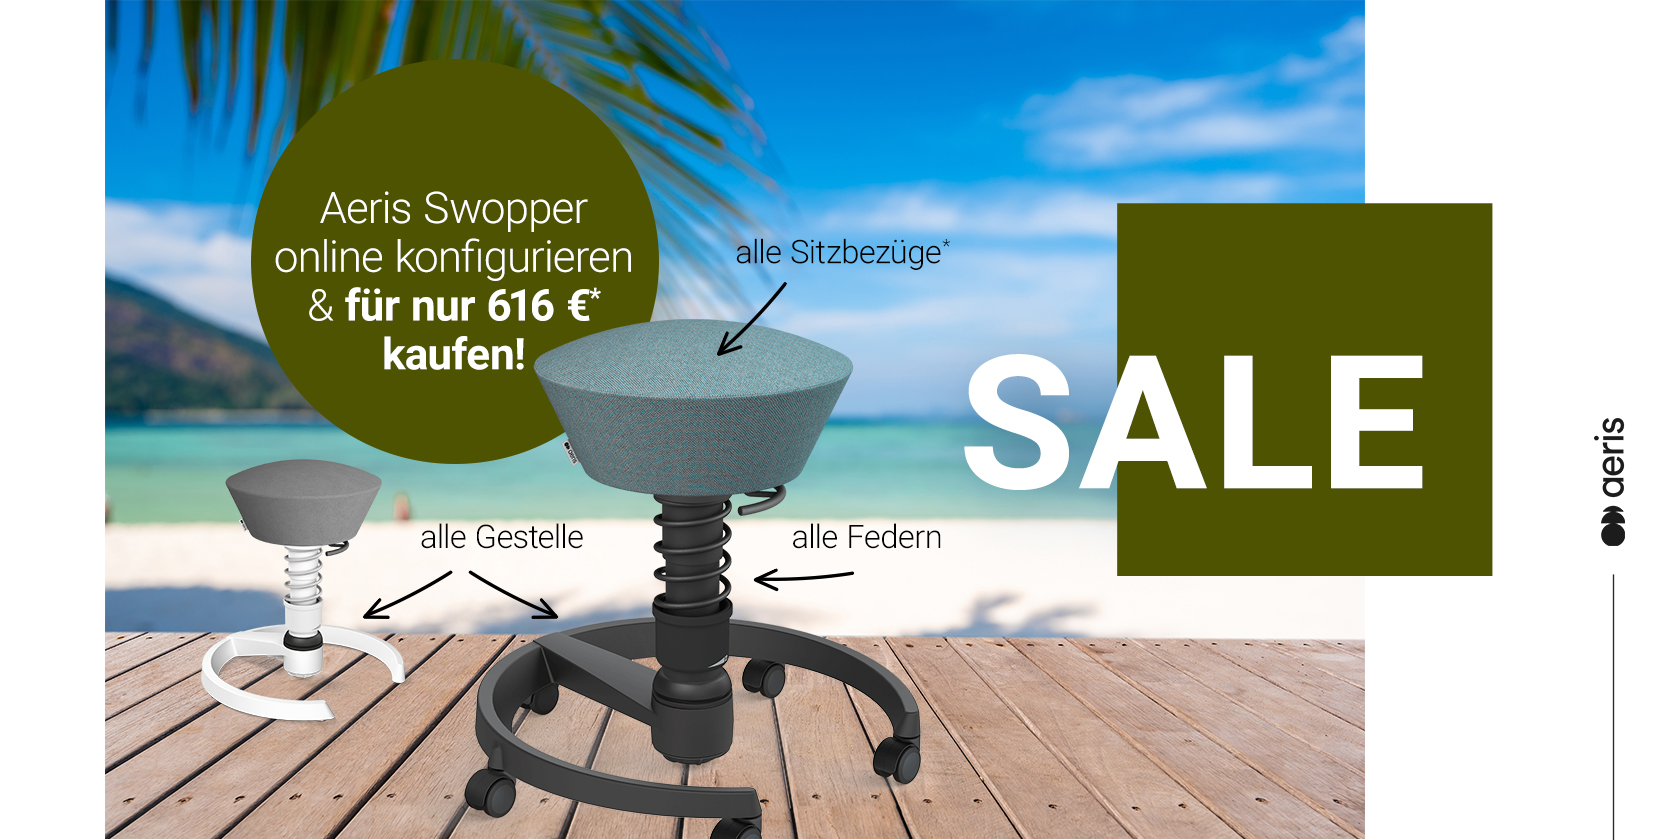  Summer Sale bei trendgo: Alle Aeris Swopper für nur € 616,00! -  Summer Sale bei trendgo: Alle Aeris Swopper für nur € 616,00!